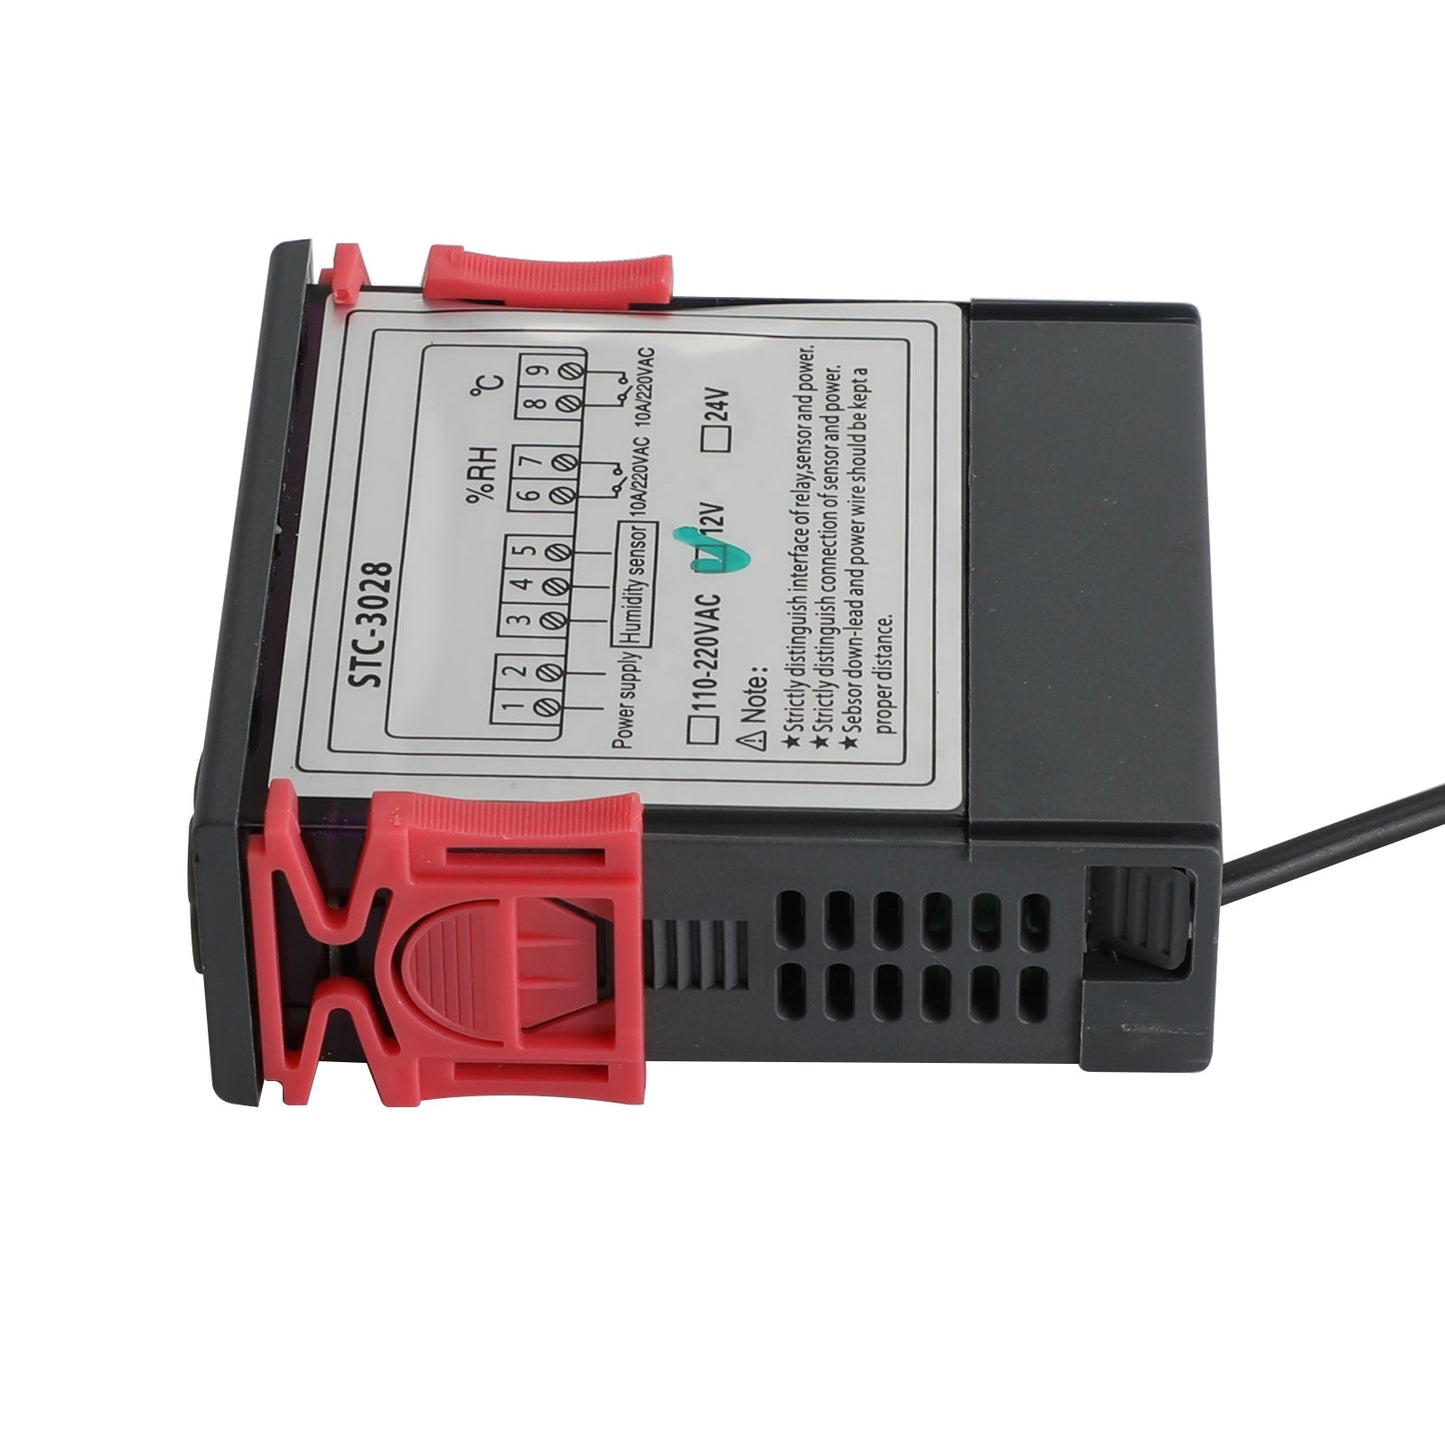 STC-3028 Contrôleur numérique de température et d'humidité à double affichage, thermostat + sonde